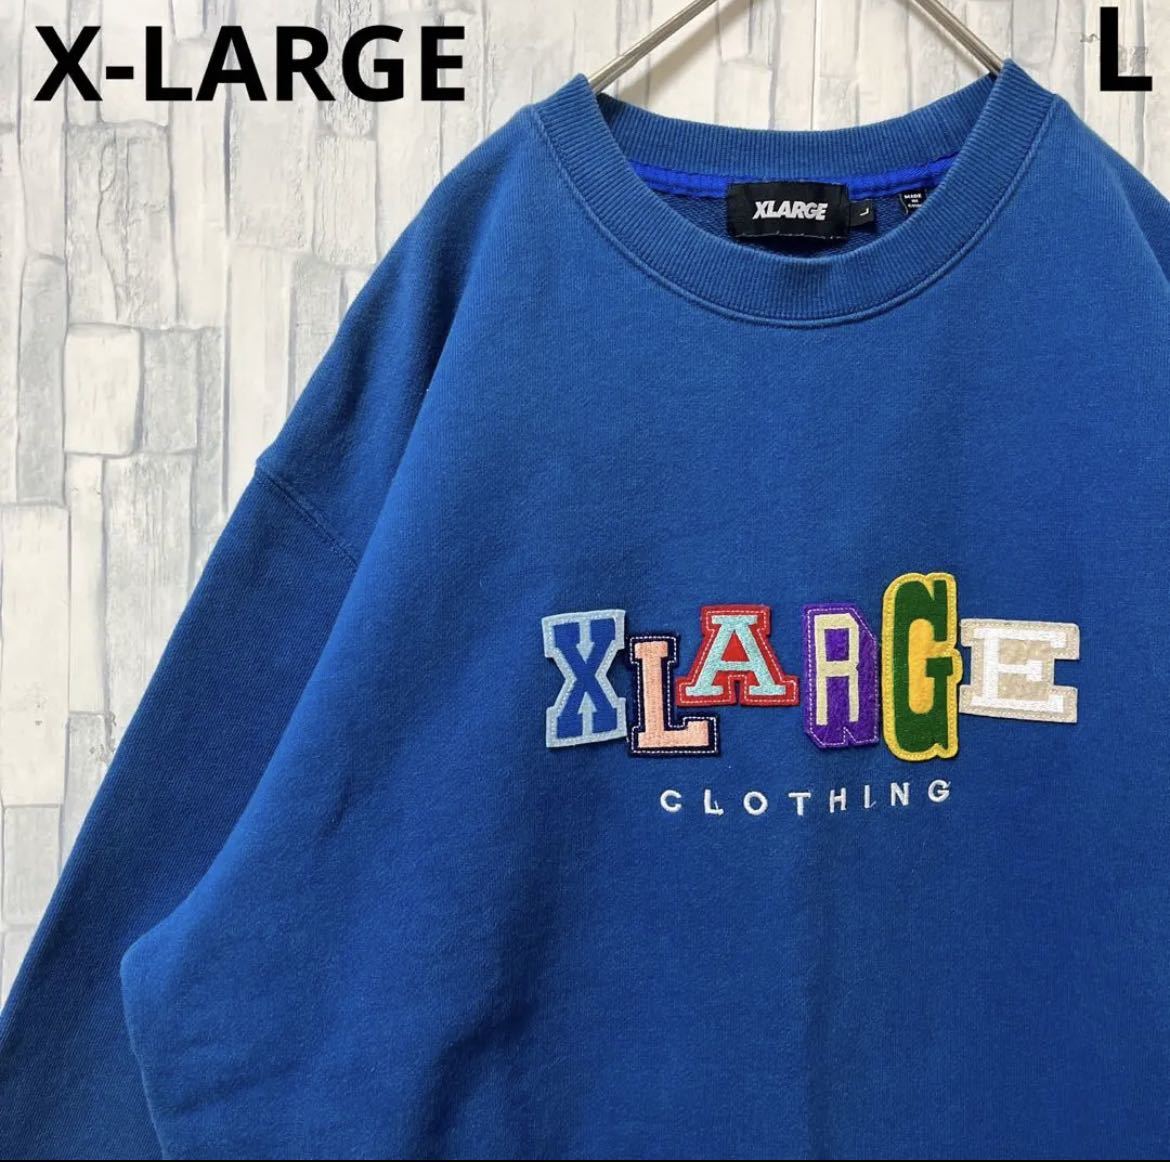 X-LARGE XLARGE エクストララージ トレーナー スウェット サイズL デカロゴ ビッグロゴ プルオーバー くすみブルー 刺繍ロゴ ワッペン